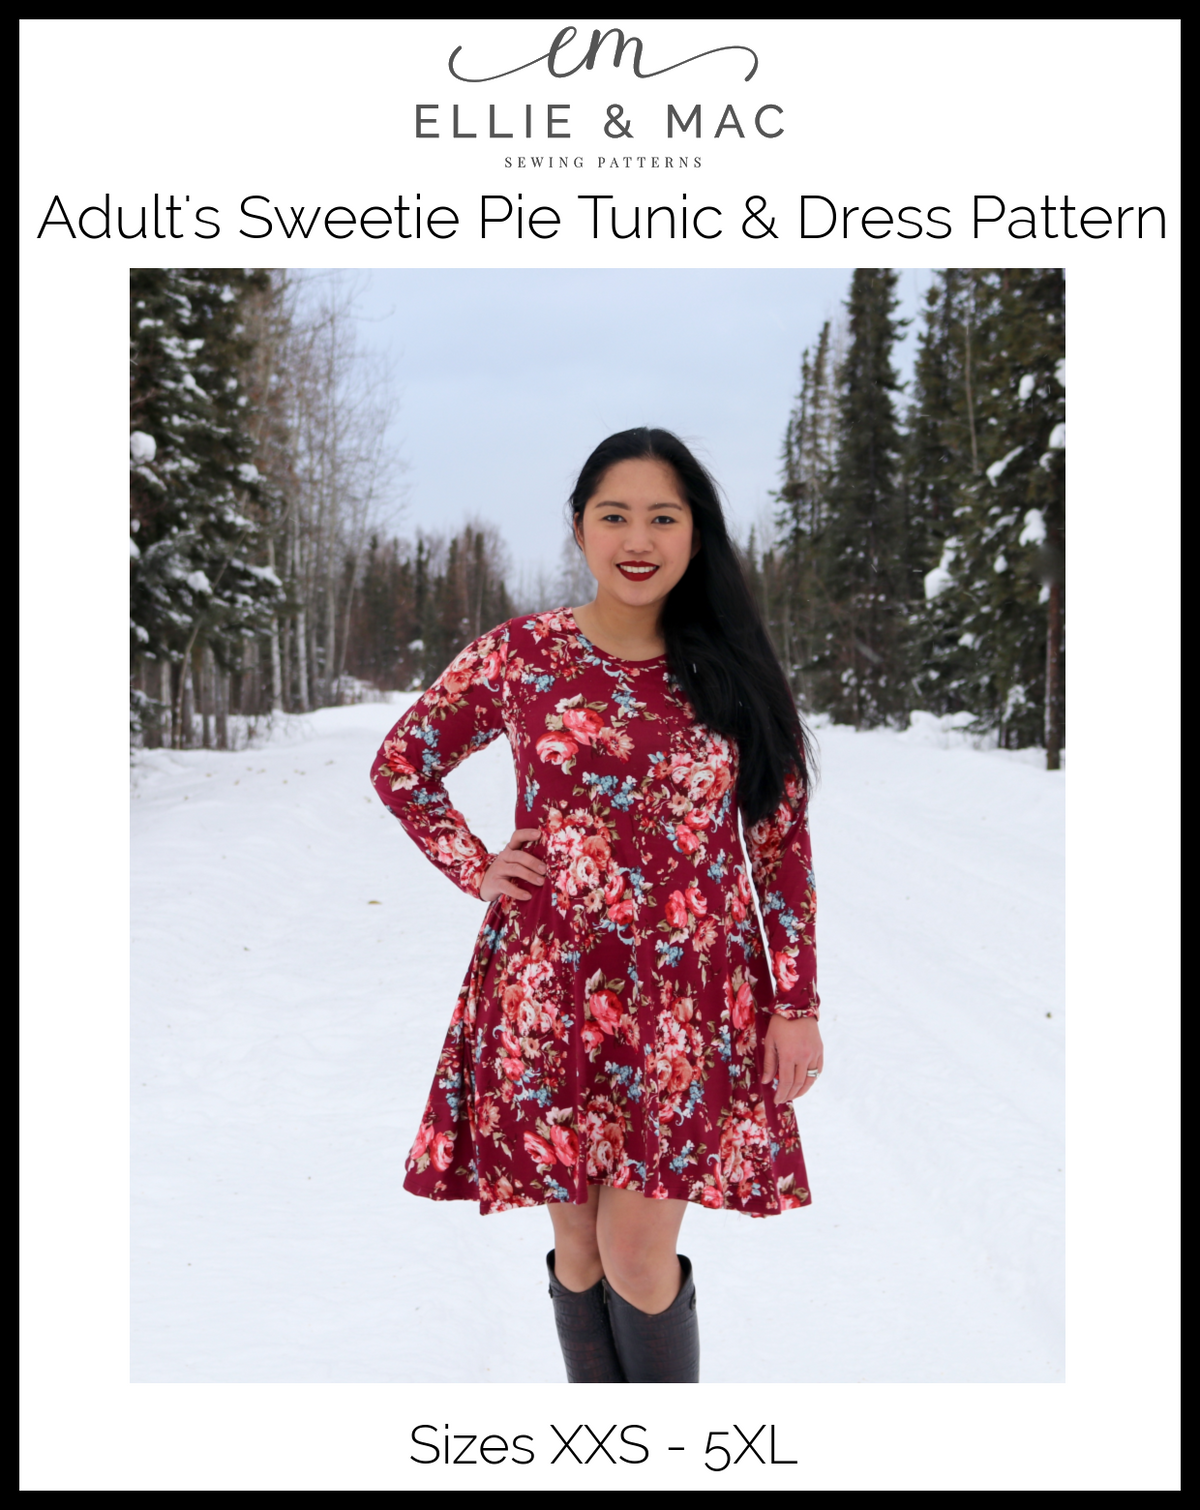 Adult Sweetie Pie Tunic & Dress Pattern